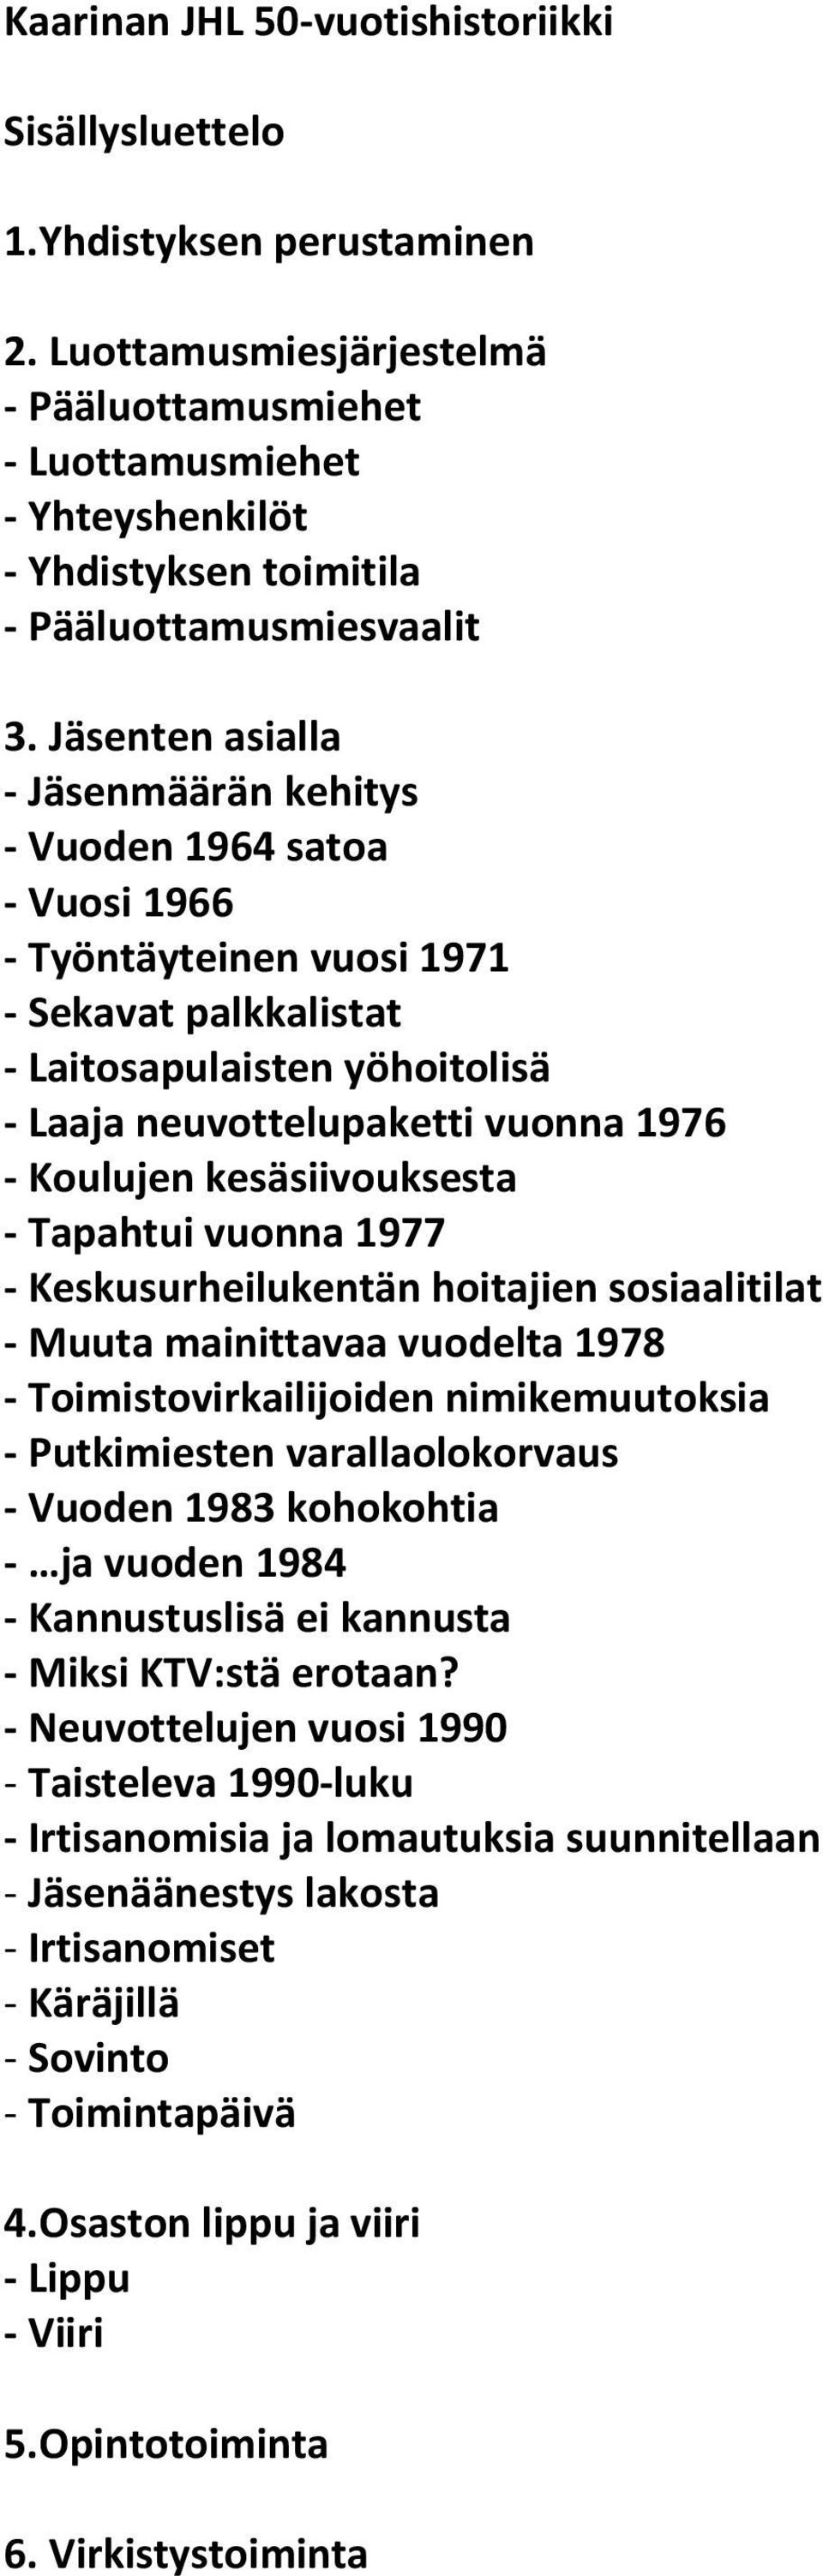 Jäsenten asialla - Jäsenmäärän kehitys - Vuoden 1964 satoa - Vuosi 1966 - Työntäyteinen vuosi 1971 - Sekavat palkkalistat - Laitosapulaisten yöhoitolisä - Laaja neuvottelupaketti vuonna 1976 -